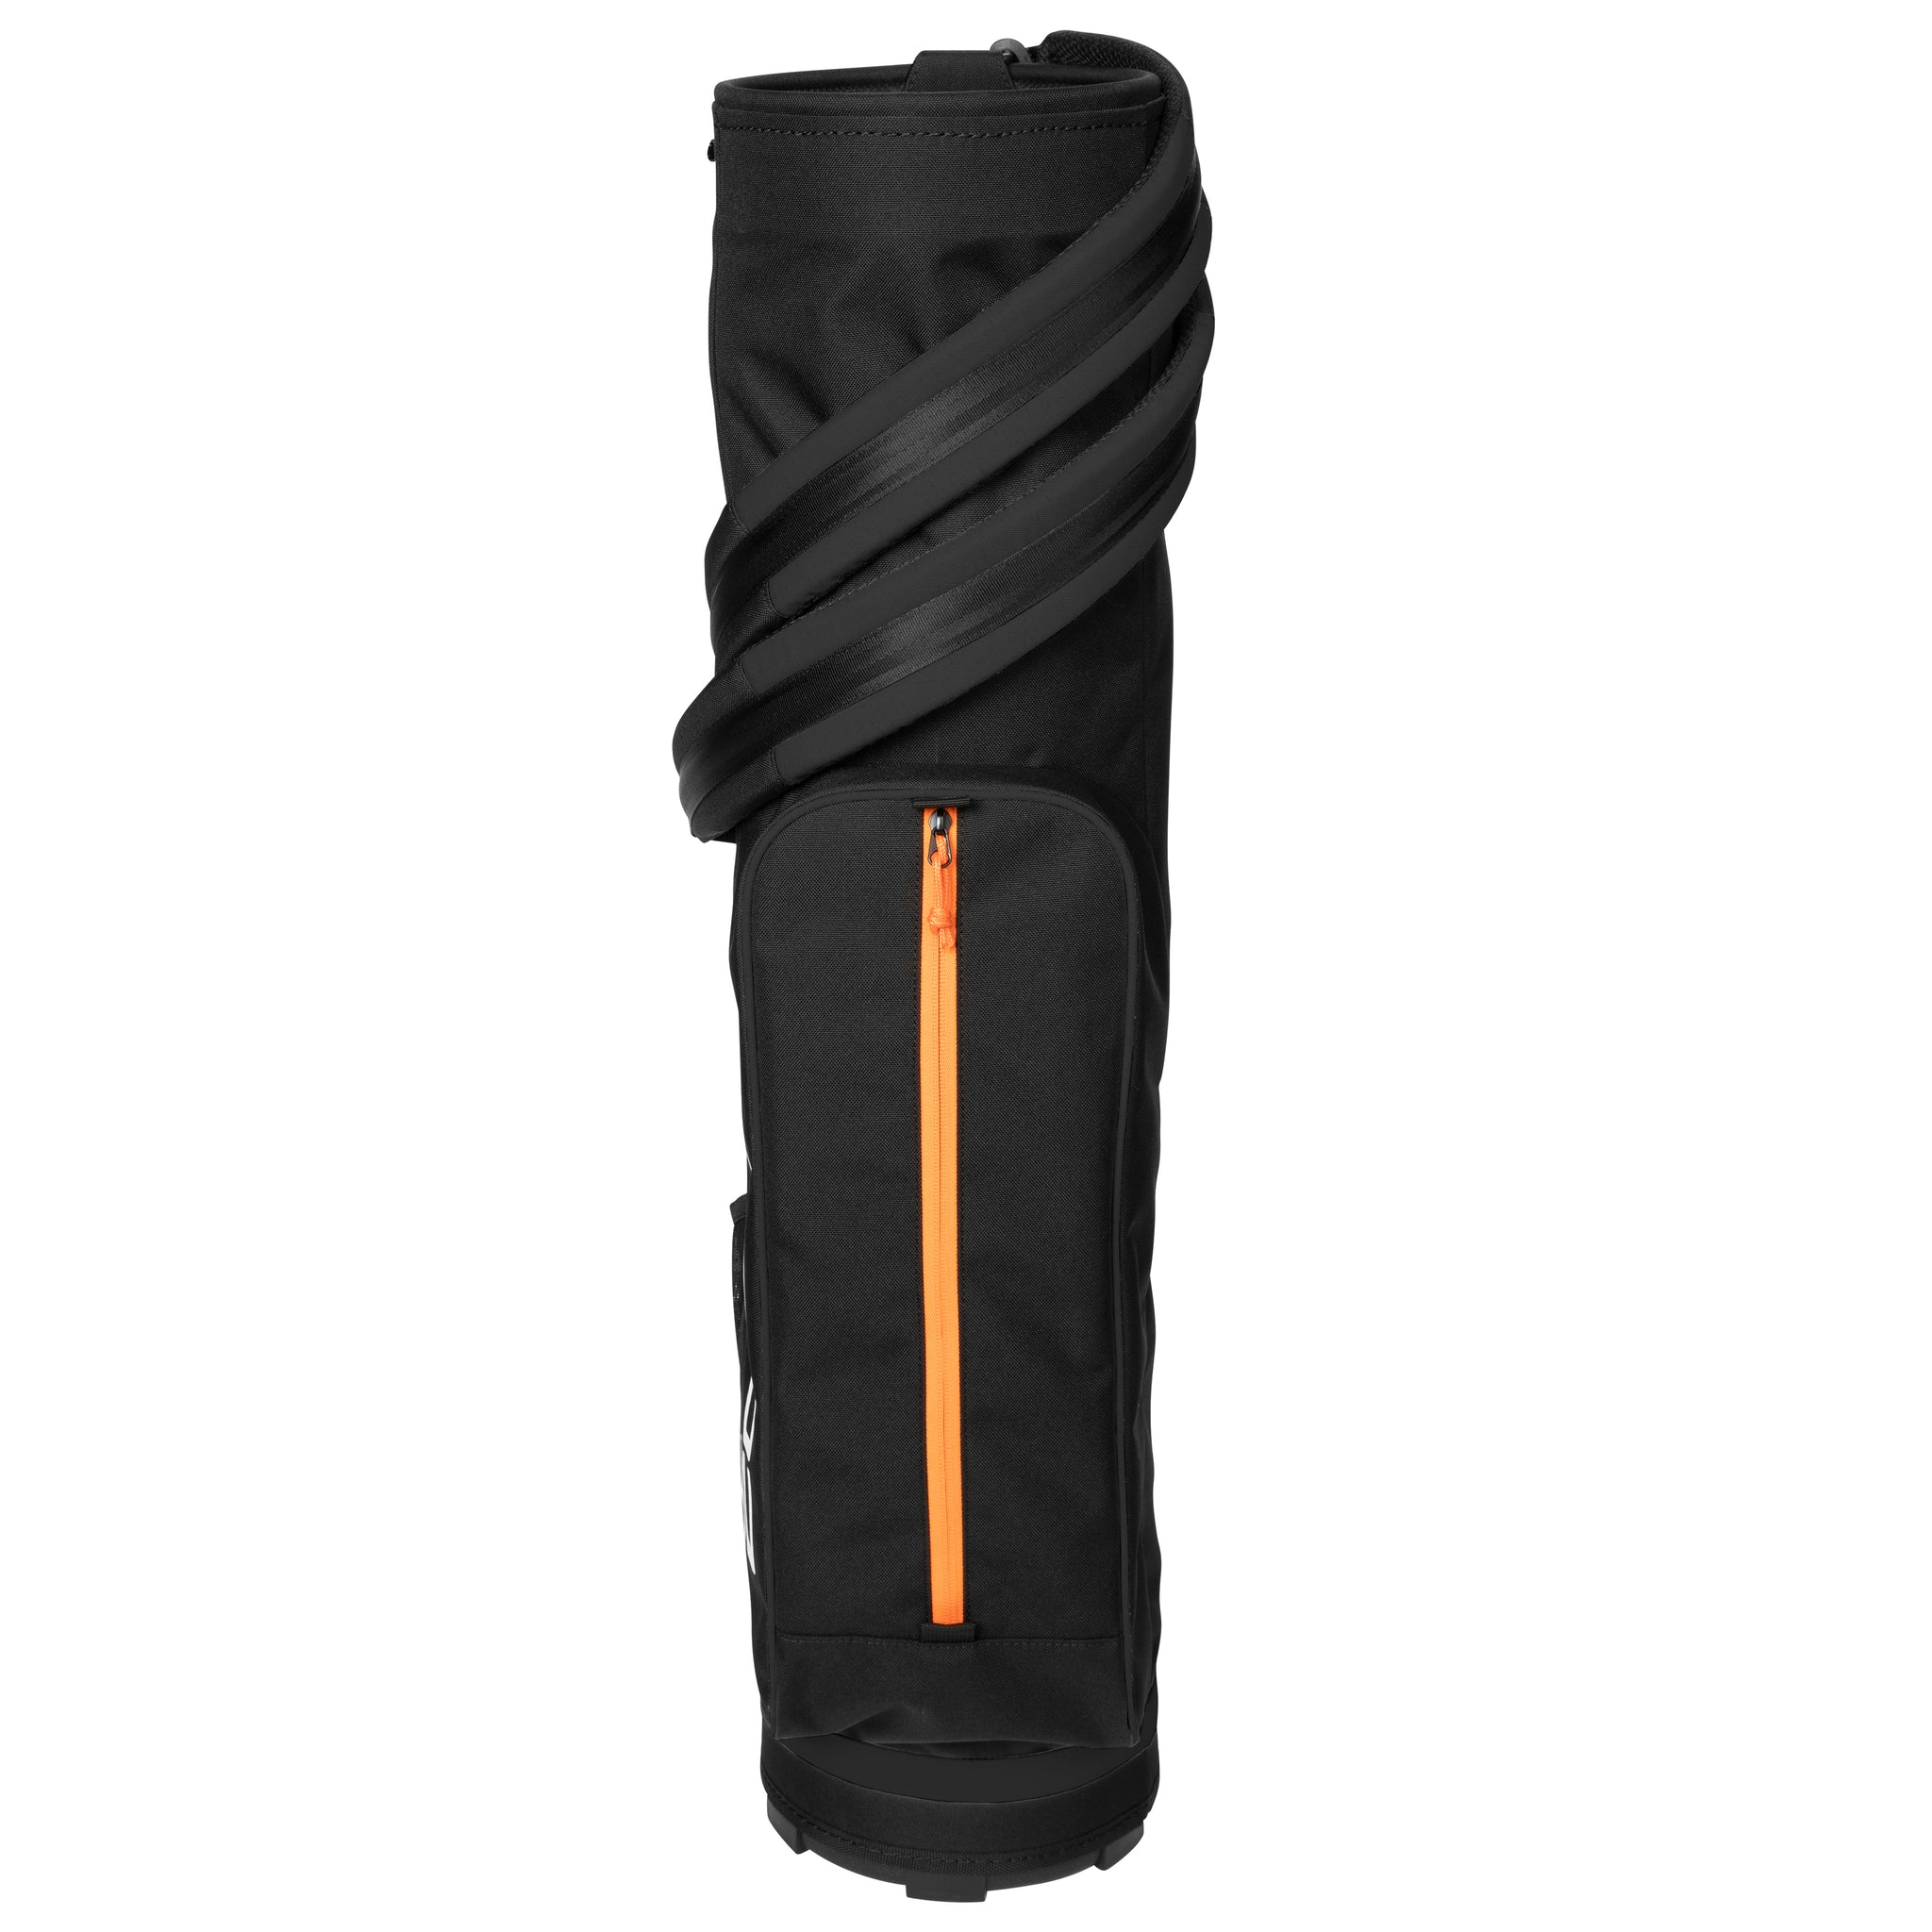 cobra-golf-ultralight-pencil-bag-909527-black-gold-fusion-04